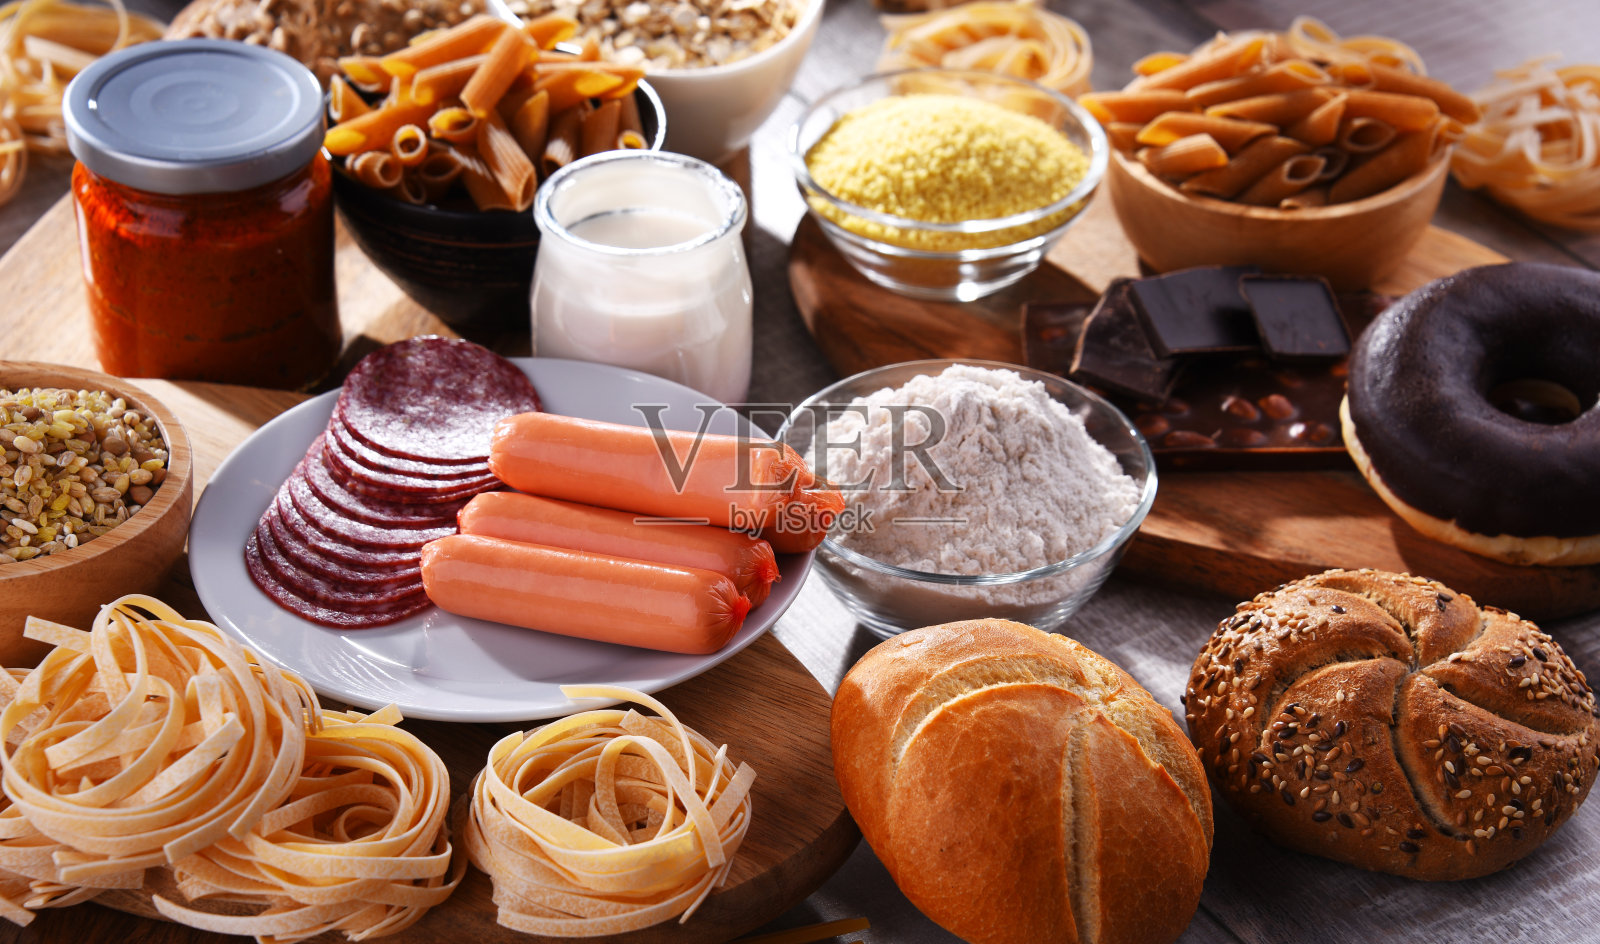 由多种含谷蛋白的食品组成照片摄影图片